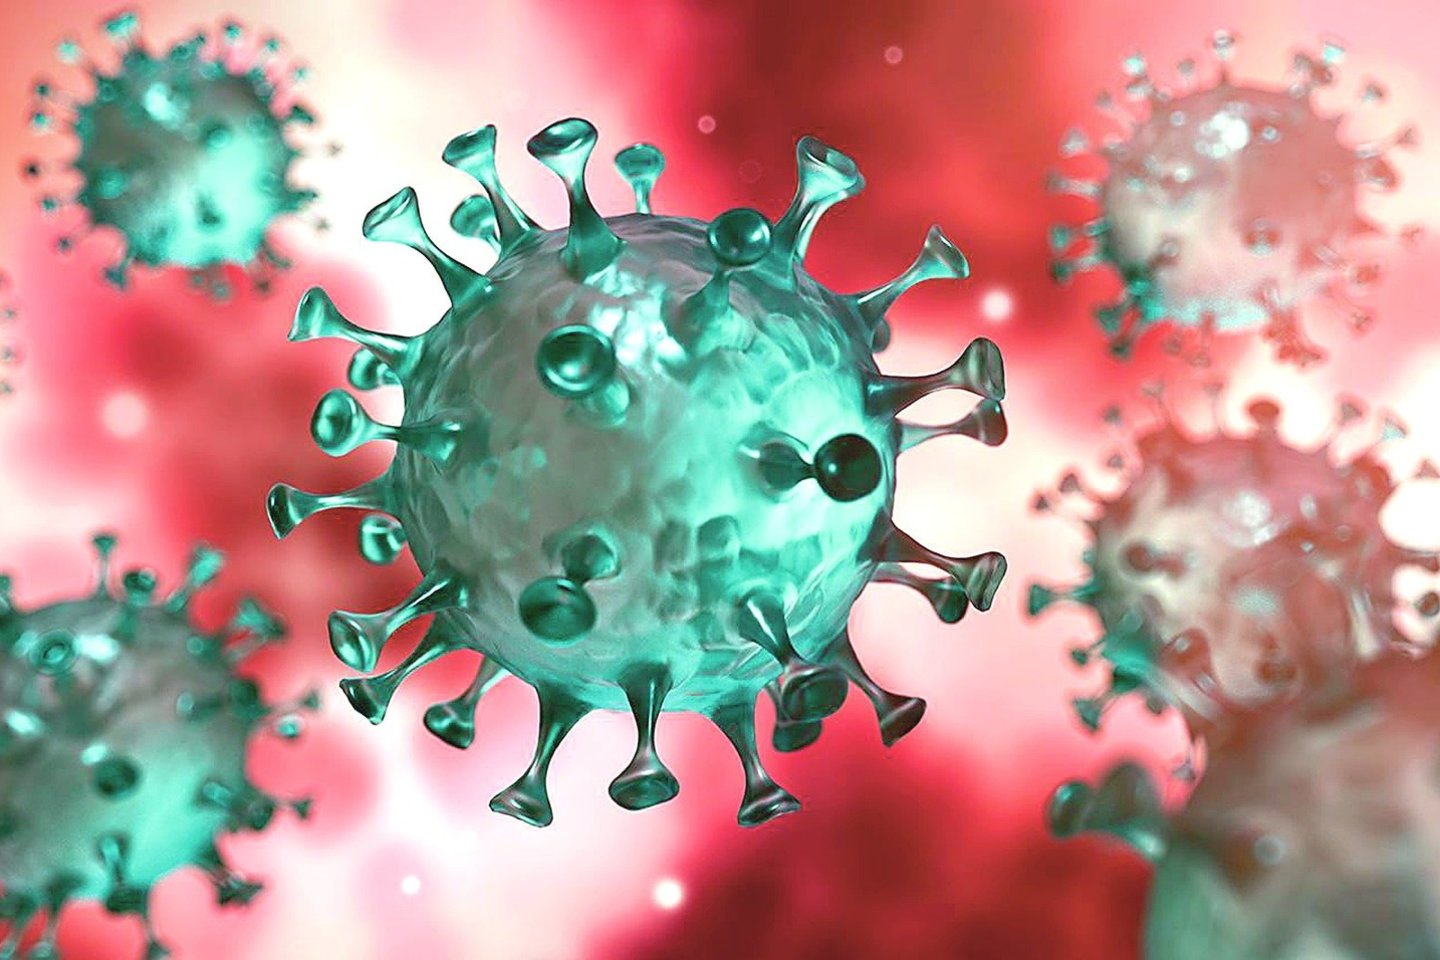 Koronavirusas pasaulyje nusinešė 6,2 milijono gyvybių, bet manoma, kad tikrieji skaičiai svyruoja tarp 14 ir 24 milijonų.<br>R.Danisevičiaus nuotr.